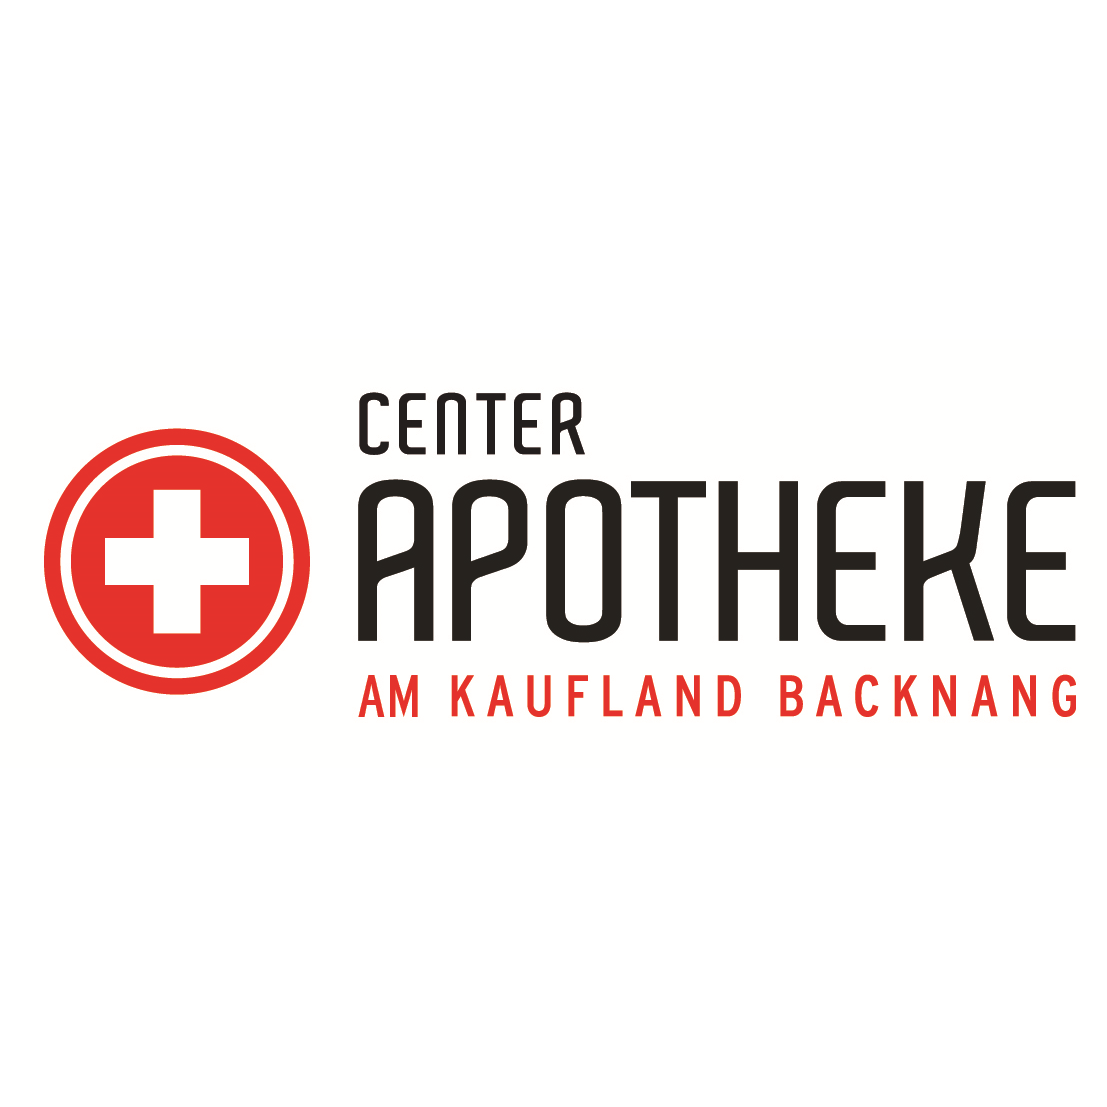 Logo der Center-Apotheke im Kaufland Backnang